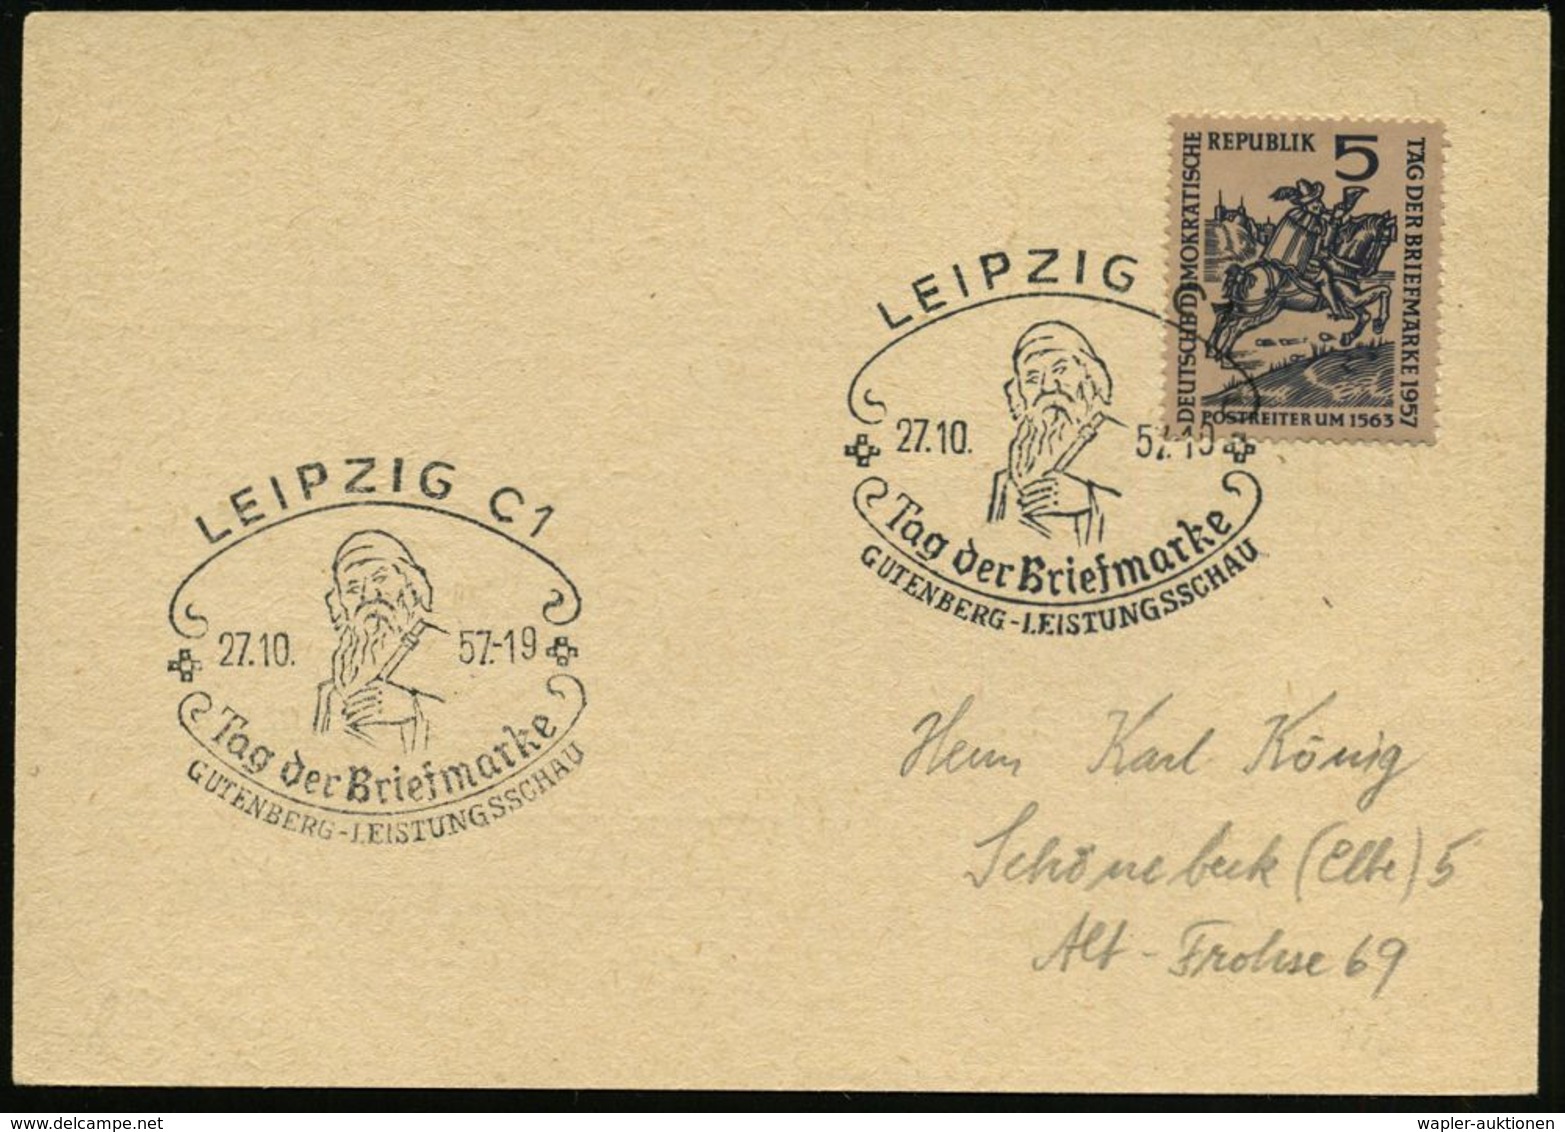 GUTENBERG & DRUCK-PIONIERE : LEIPZIG C1/ Tag Der Briefmarke/ GUTENBERG-LEISTUNGSSCHAU 1957 (26.10.) SSt = Gutenberg Auf  - Non Classificati